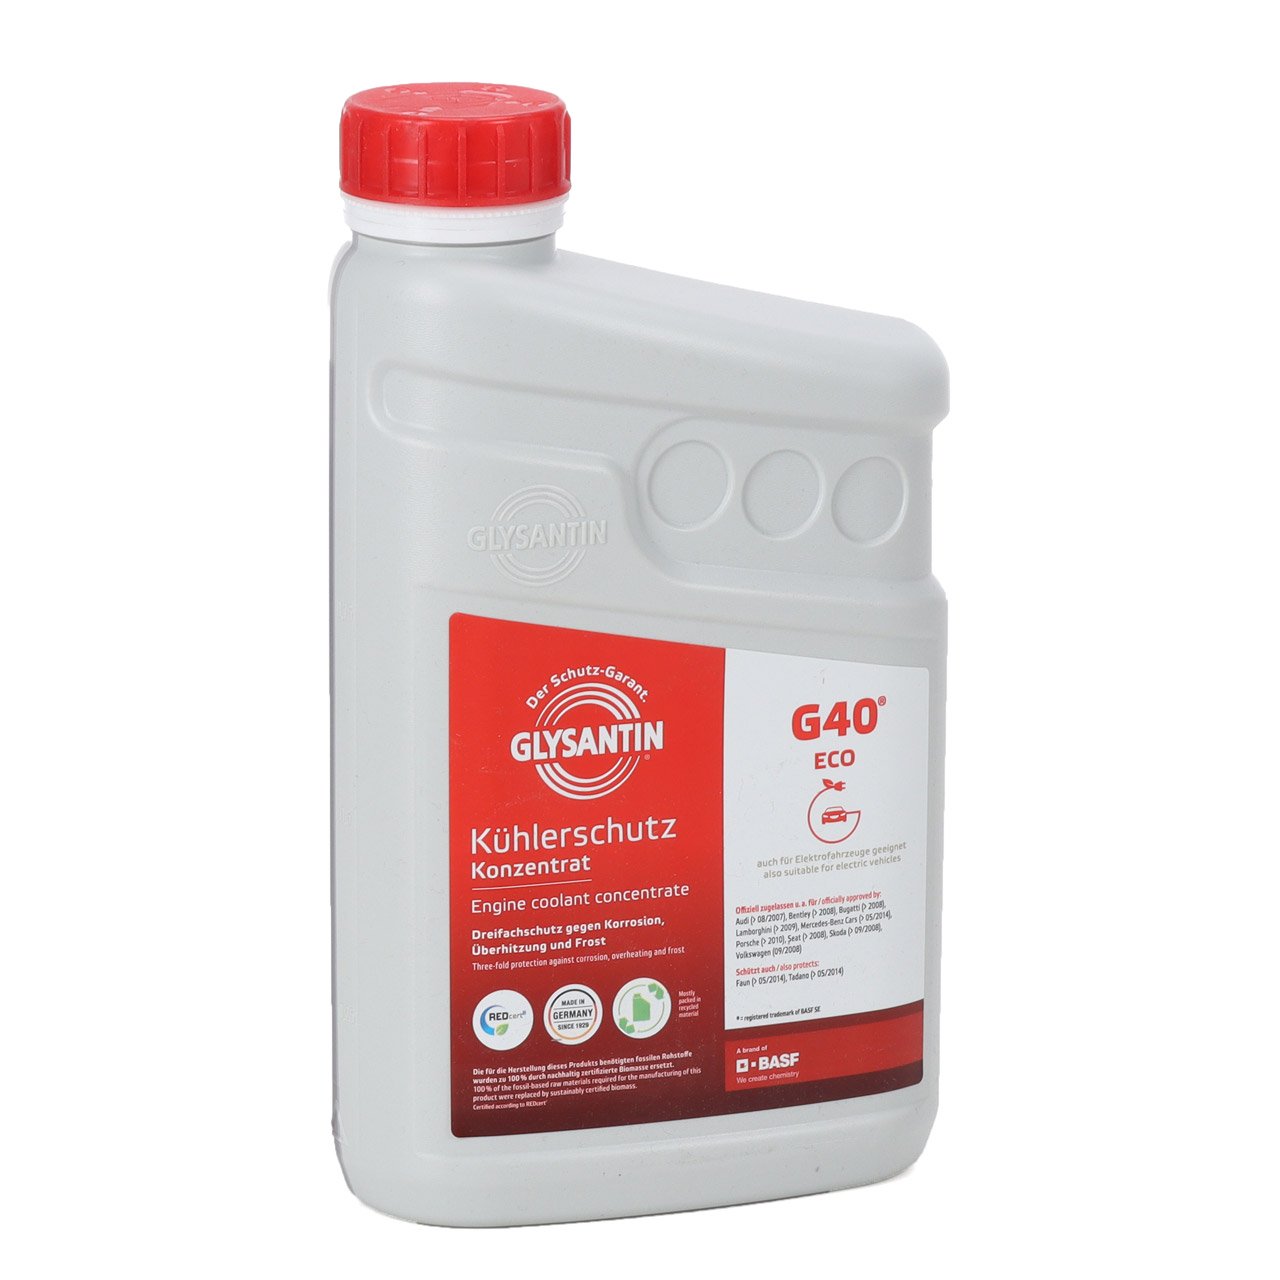 1L 1 Liter BASF GLYSANTIN Frostschutz Kühlerfrostschutz Konzentrat G40 Eco PINK